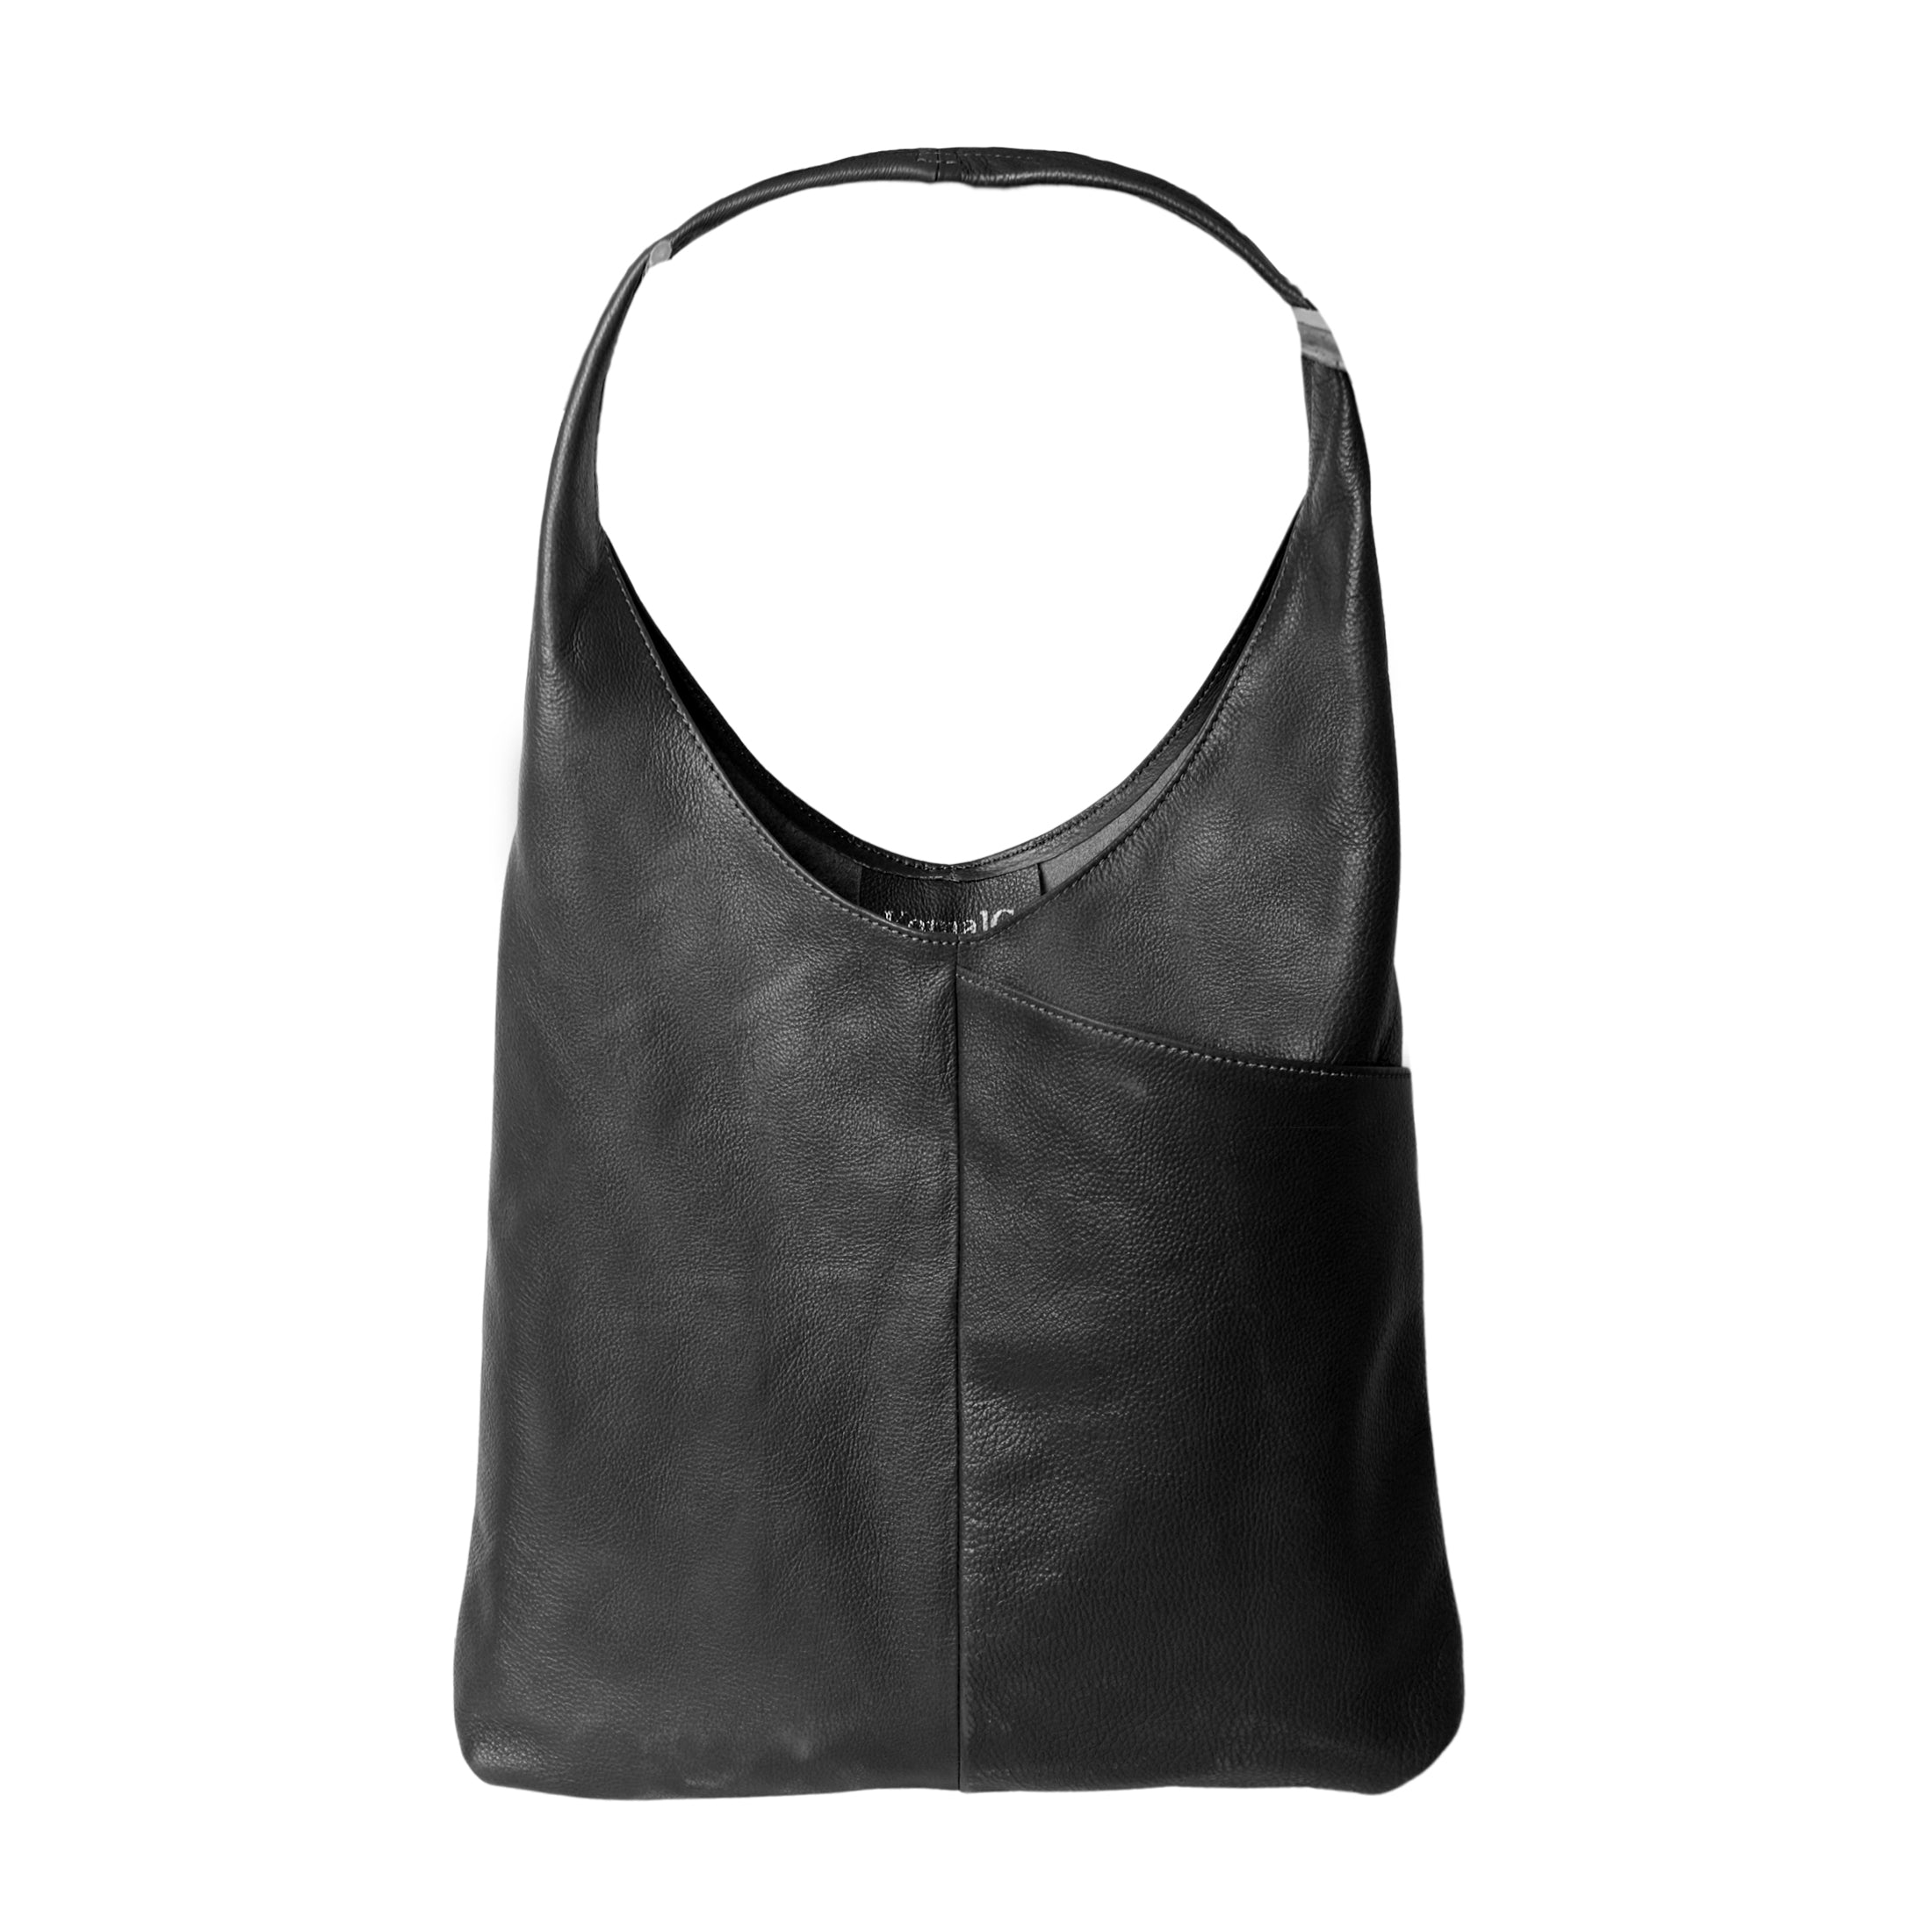 Women's Black Bags - Shop Black Purses